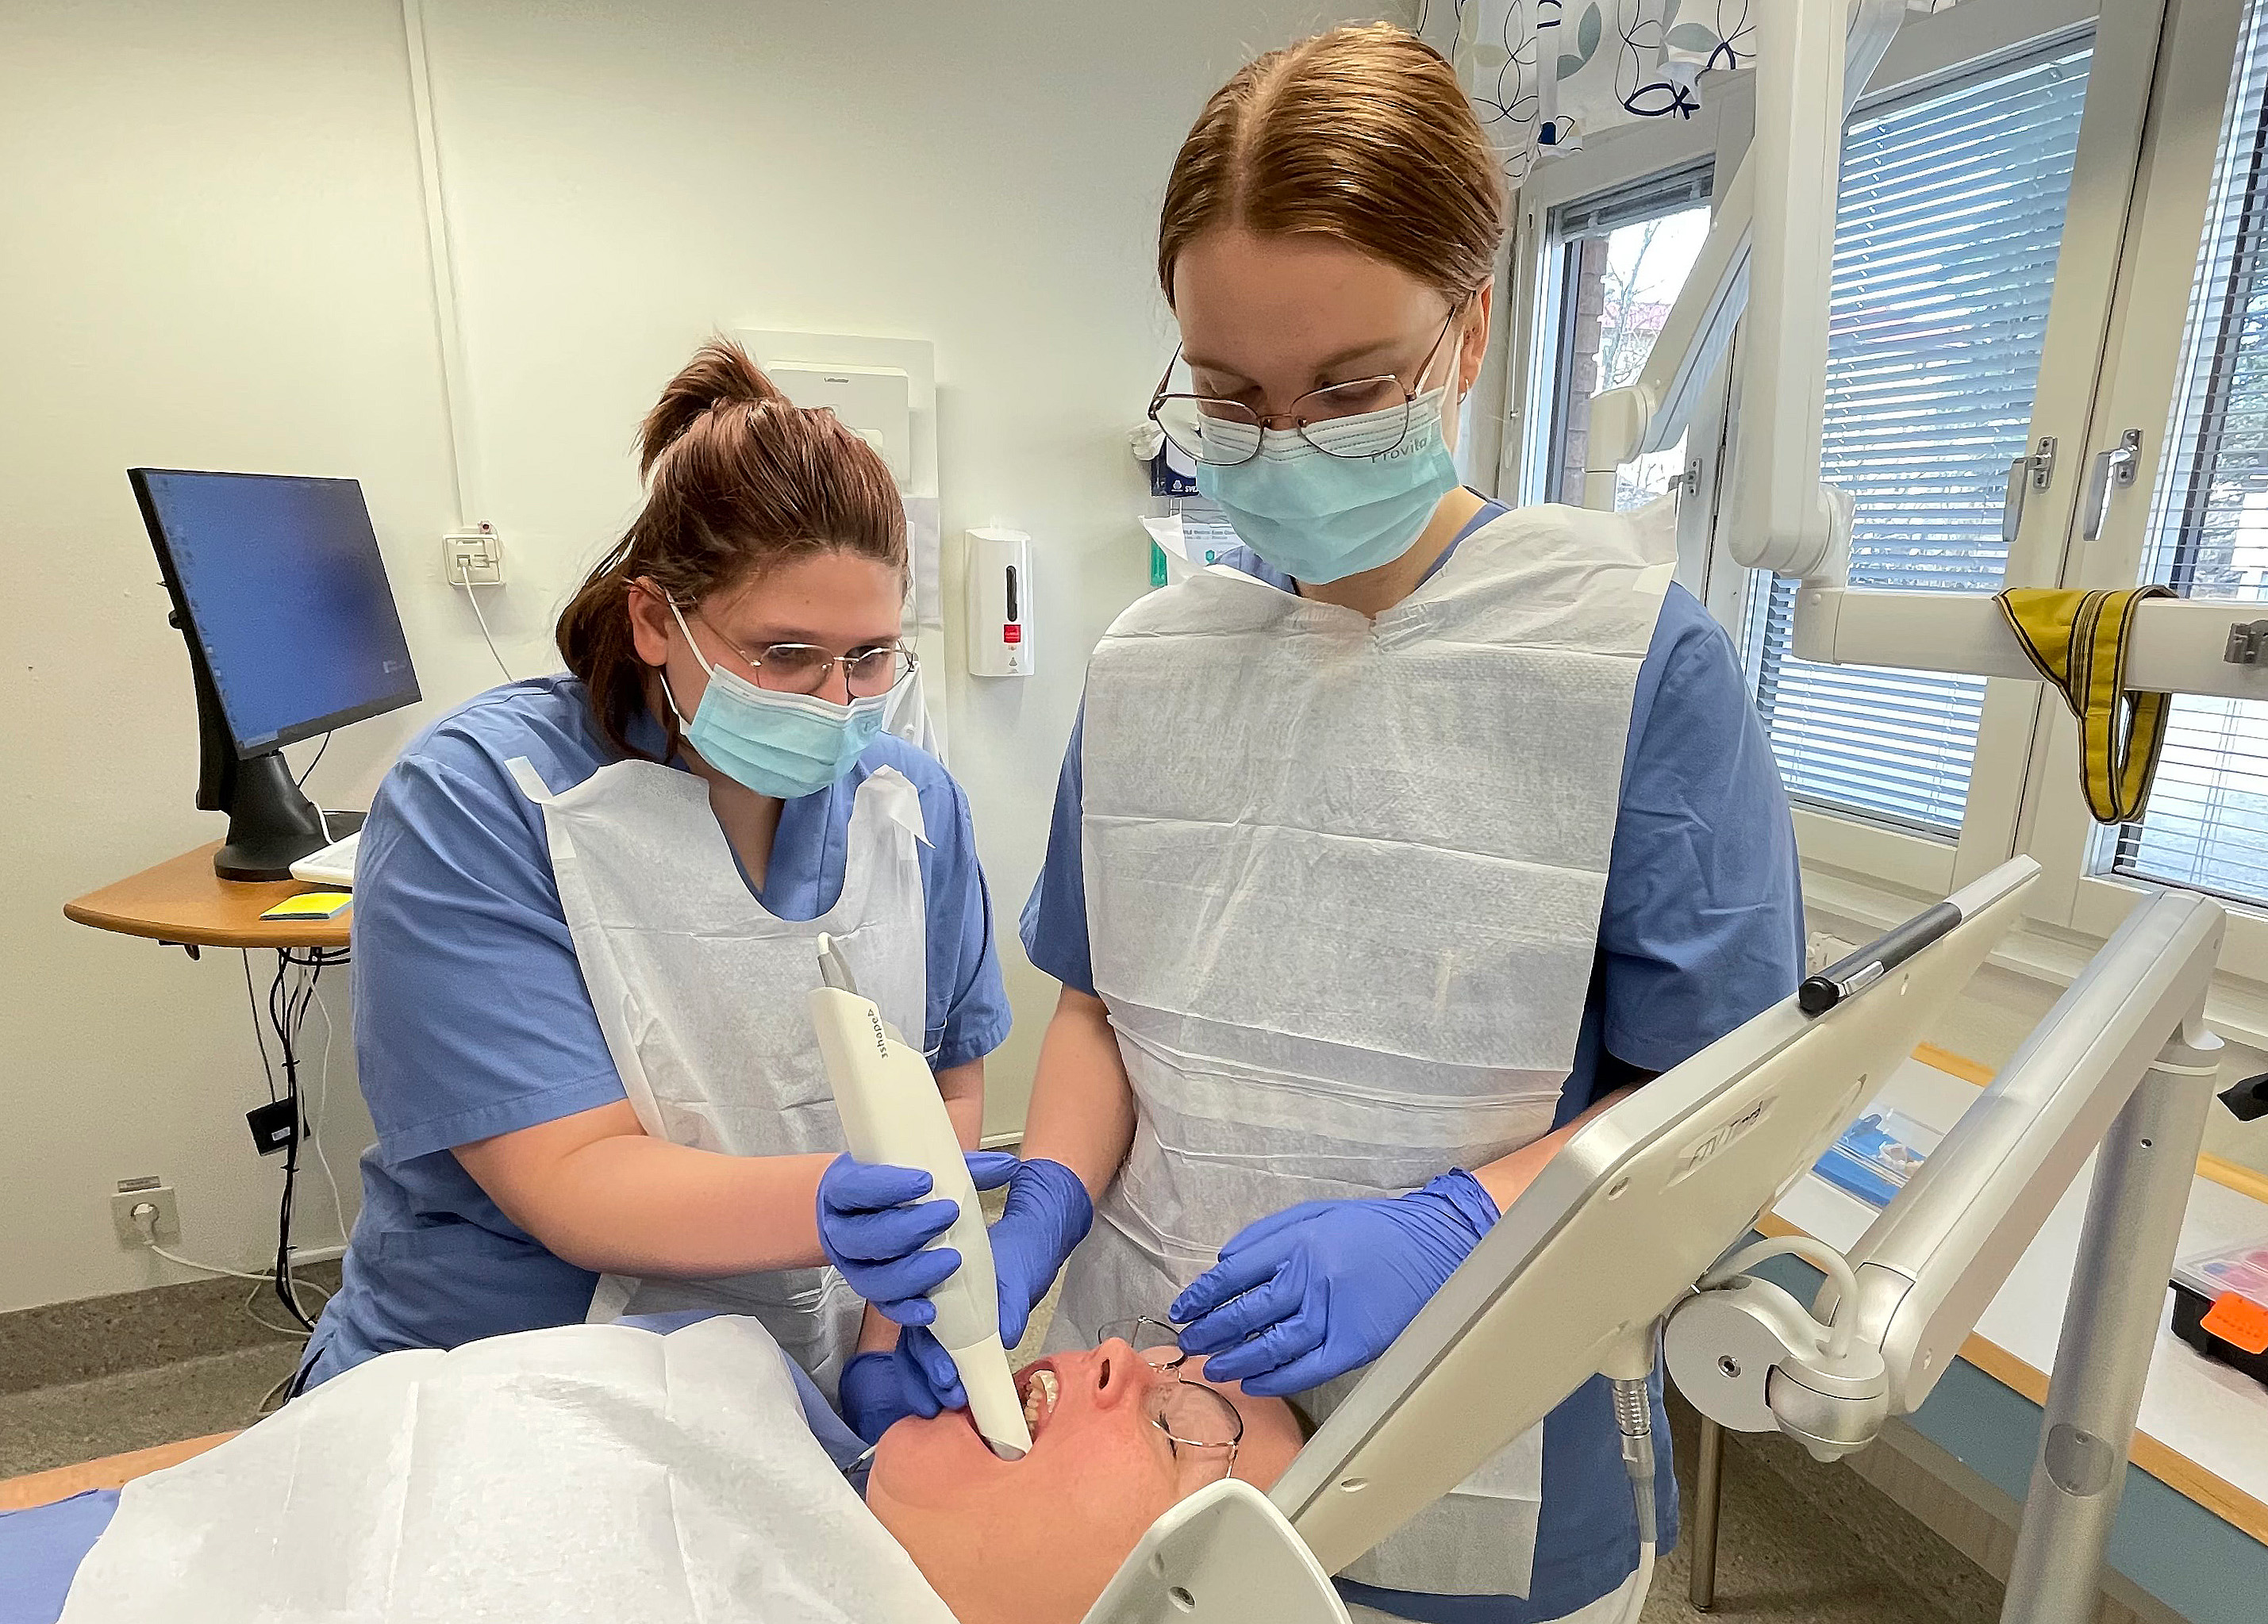 Tandläkare Matilda Nyman visar Ordelya Wasén Wiklund hur man scannar tänder på studie- och yrkesvägledare Ingela Antonsson, som fick agera patient.